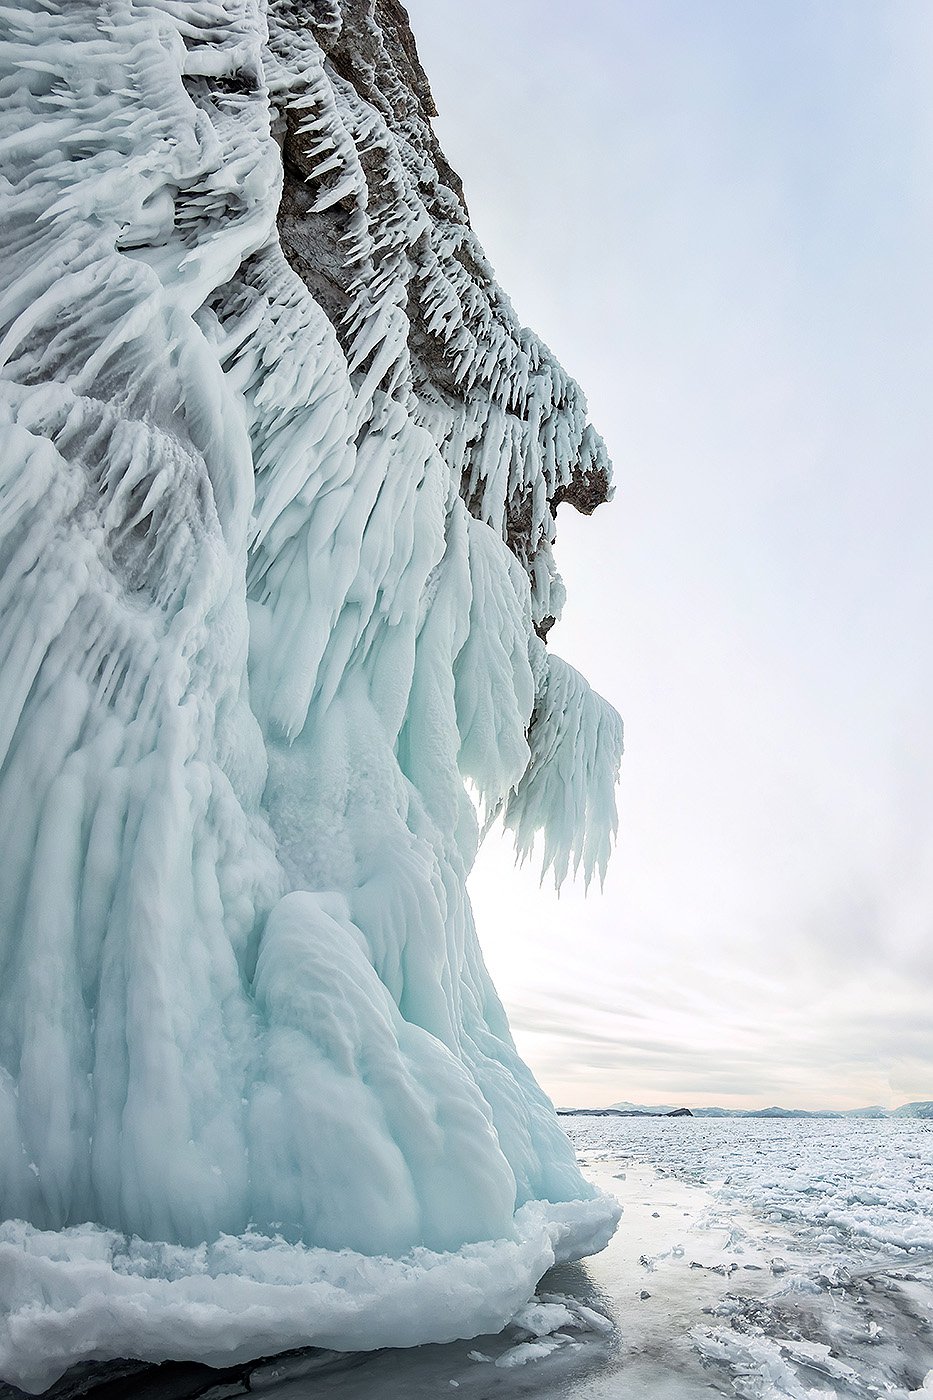 Остров Огой на Байкале зимой